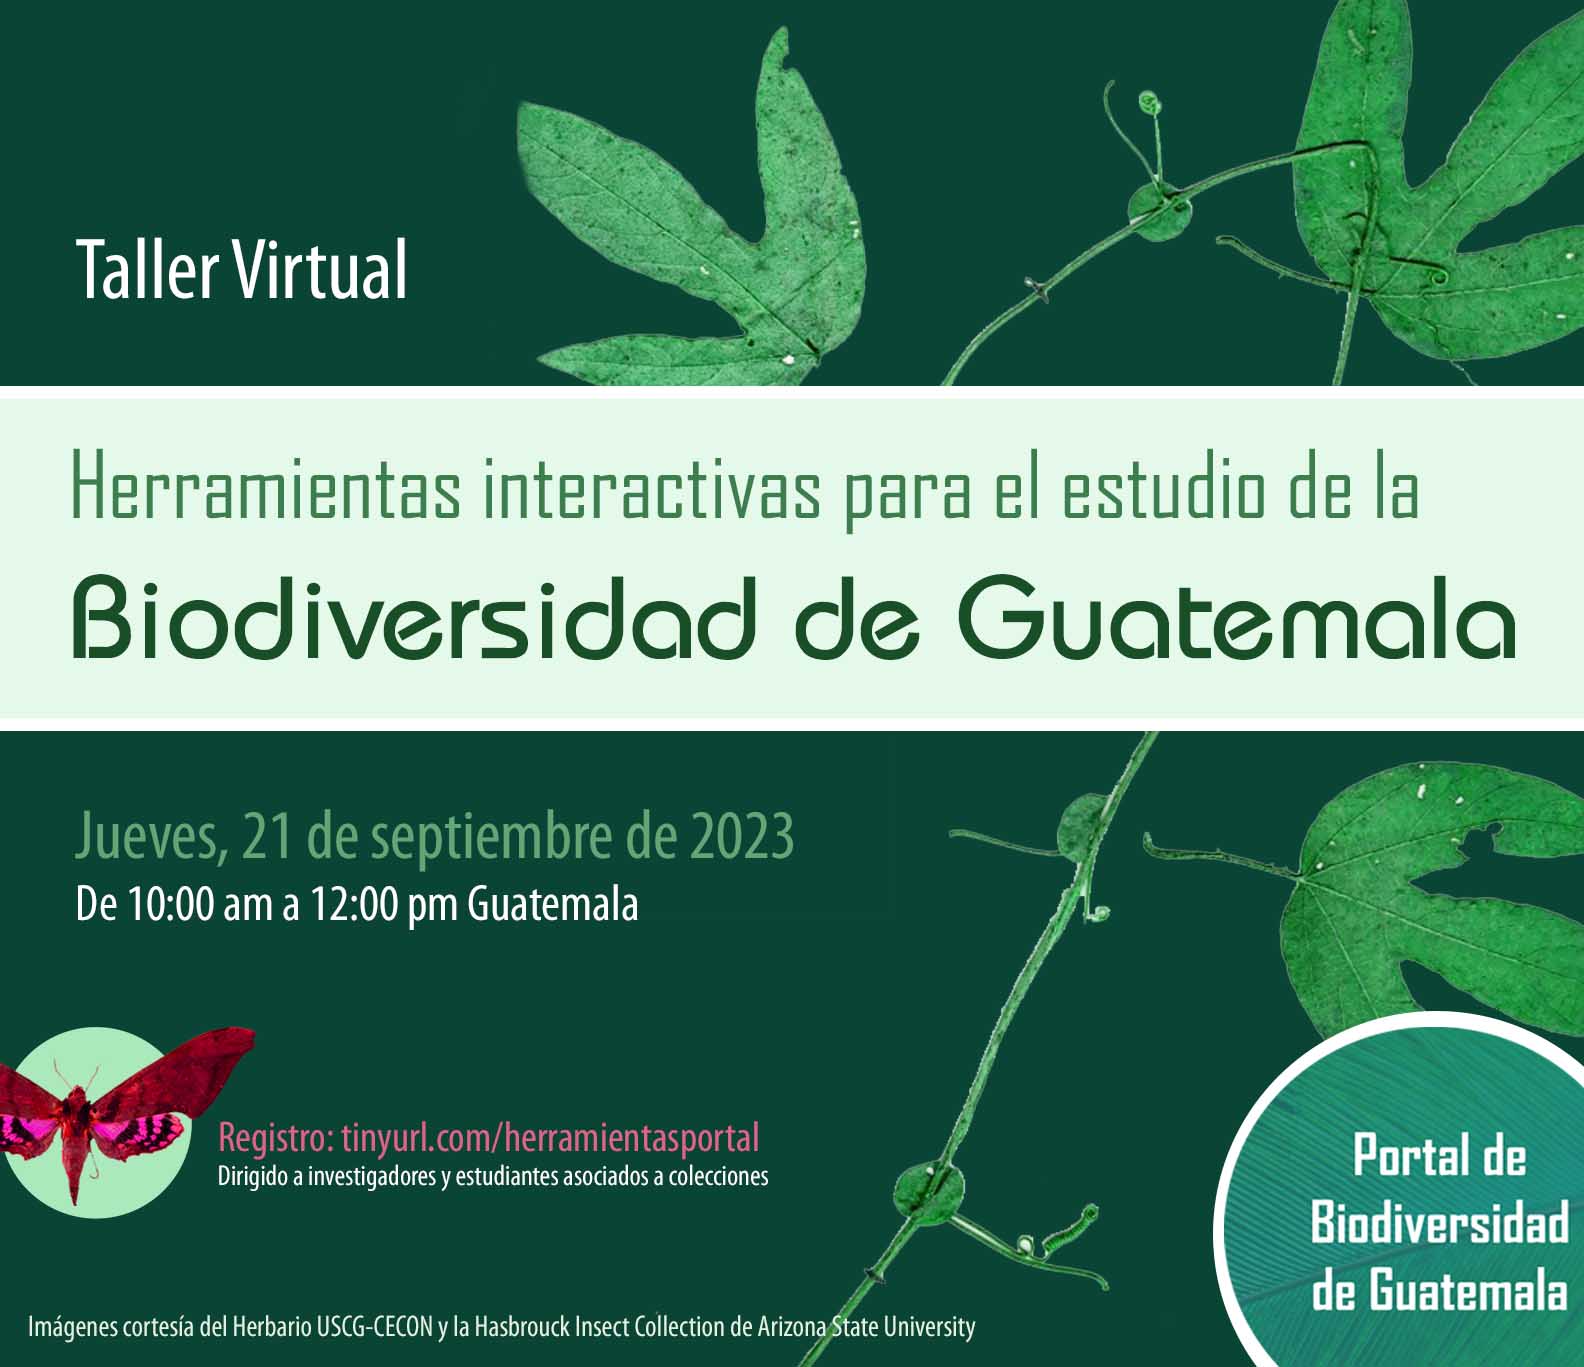 Blog del Portal de Biodiversidad